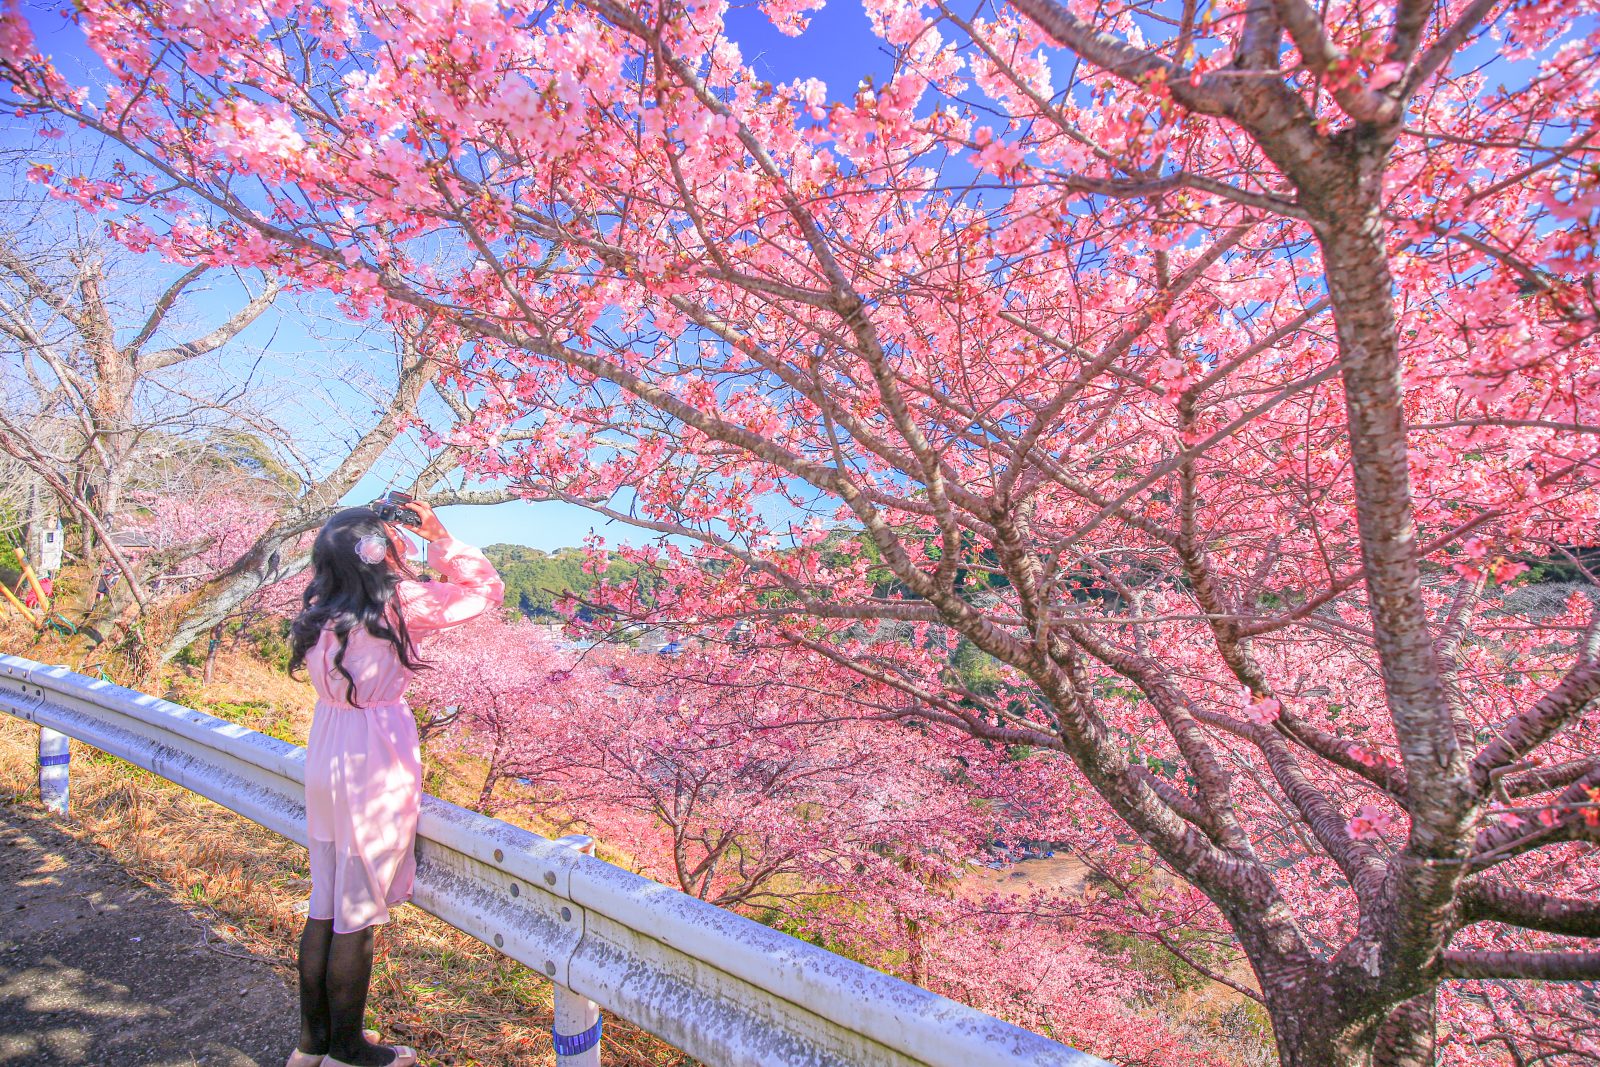 河村瑞賢公園の河津桜が見頃 🌸 南伊勢町が誇る春の絶景を見に行こう